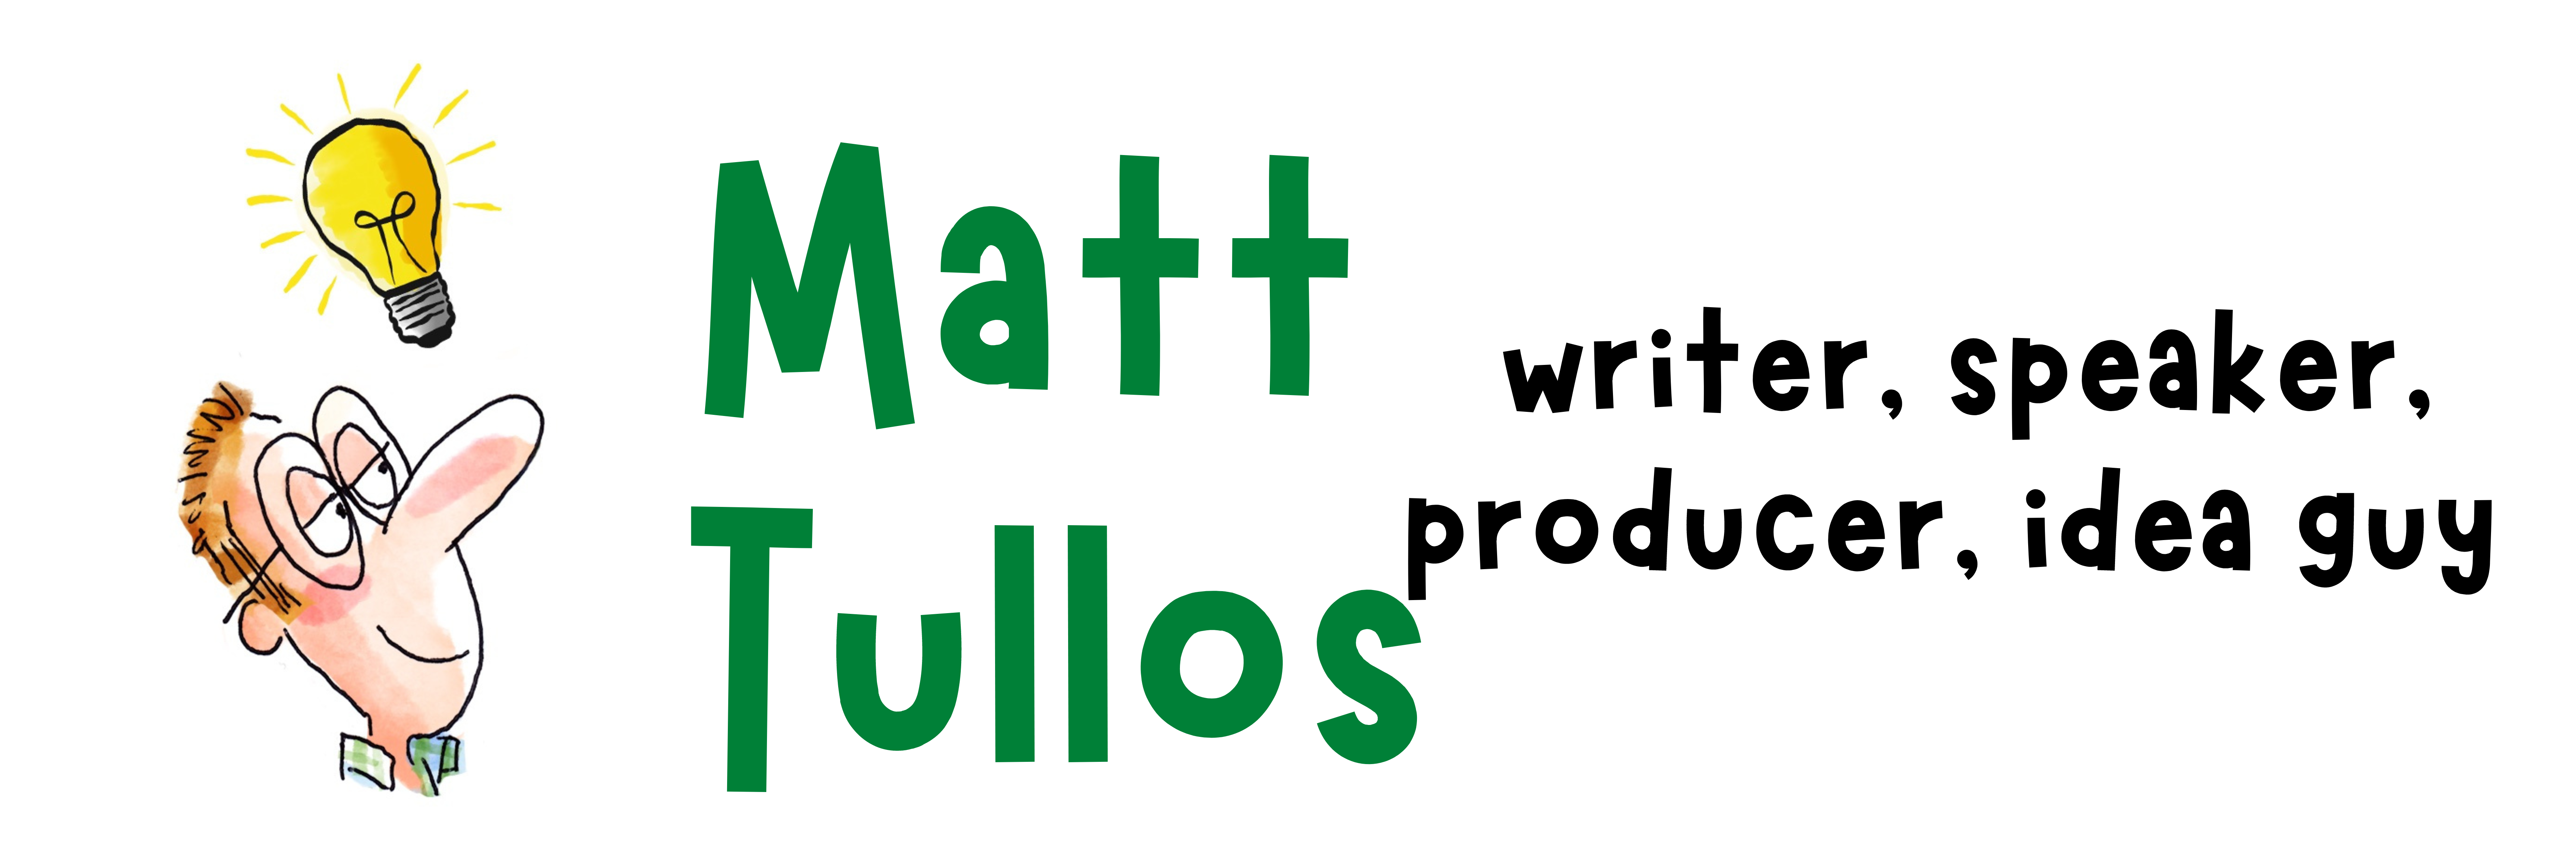 matt tullos: writer